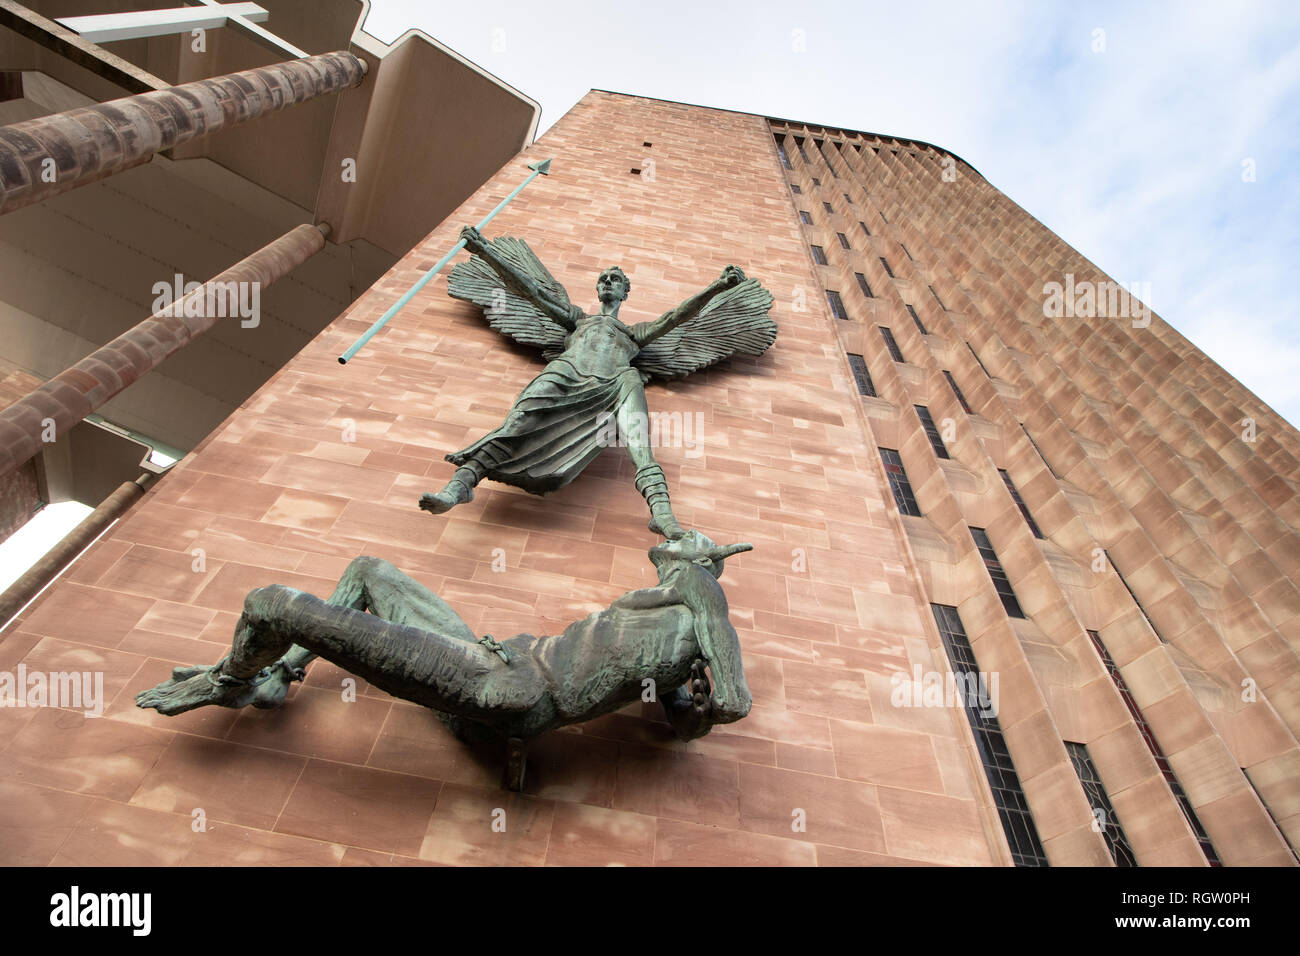 St Michael's victoire sur le diable est dépeint dans cette statue de Sir Jacob Epstein, monté sur le côté de la nouvelle cathédrale de Coventry. Banque D'Images